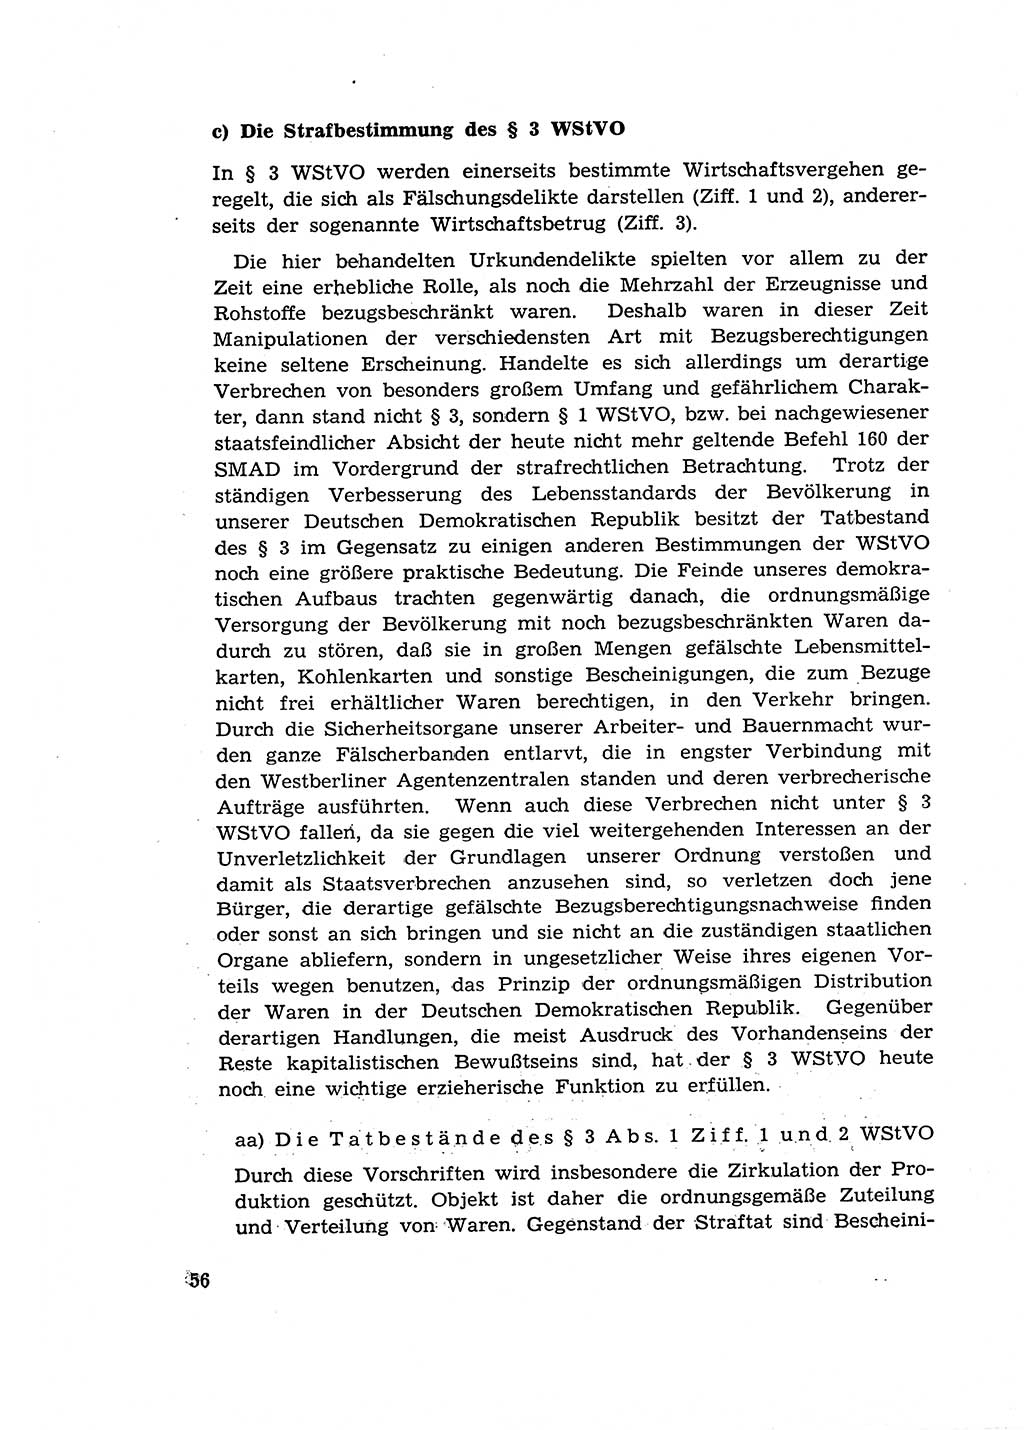 Materialien zum Strafrecht, Besonderer Teil [Deutsche Demokratische Republik (DDR)] 1955, Seite 56 (Mat. Strafr. BT DDR 1955, S. 56)